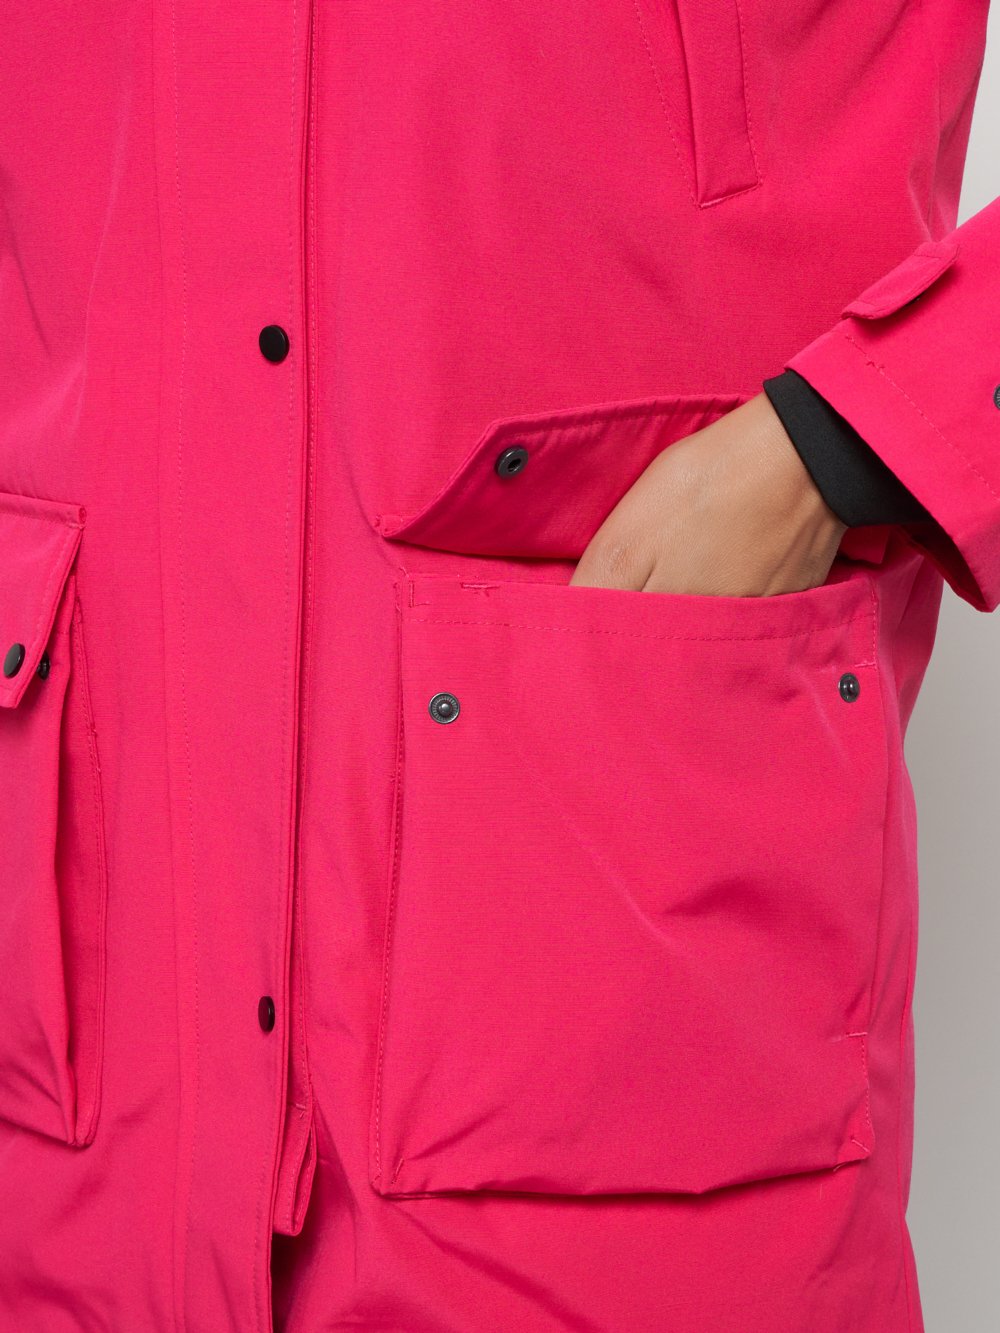 Купить куртку парку женскую оптом от производителя недорого в Москве 2329R 1